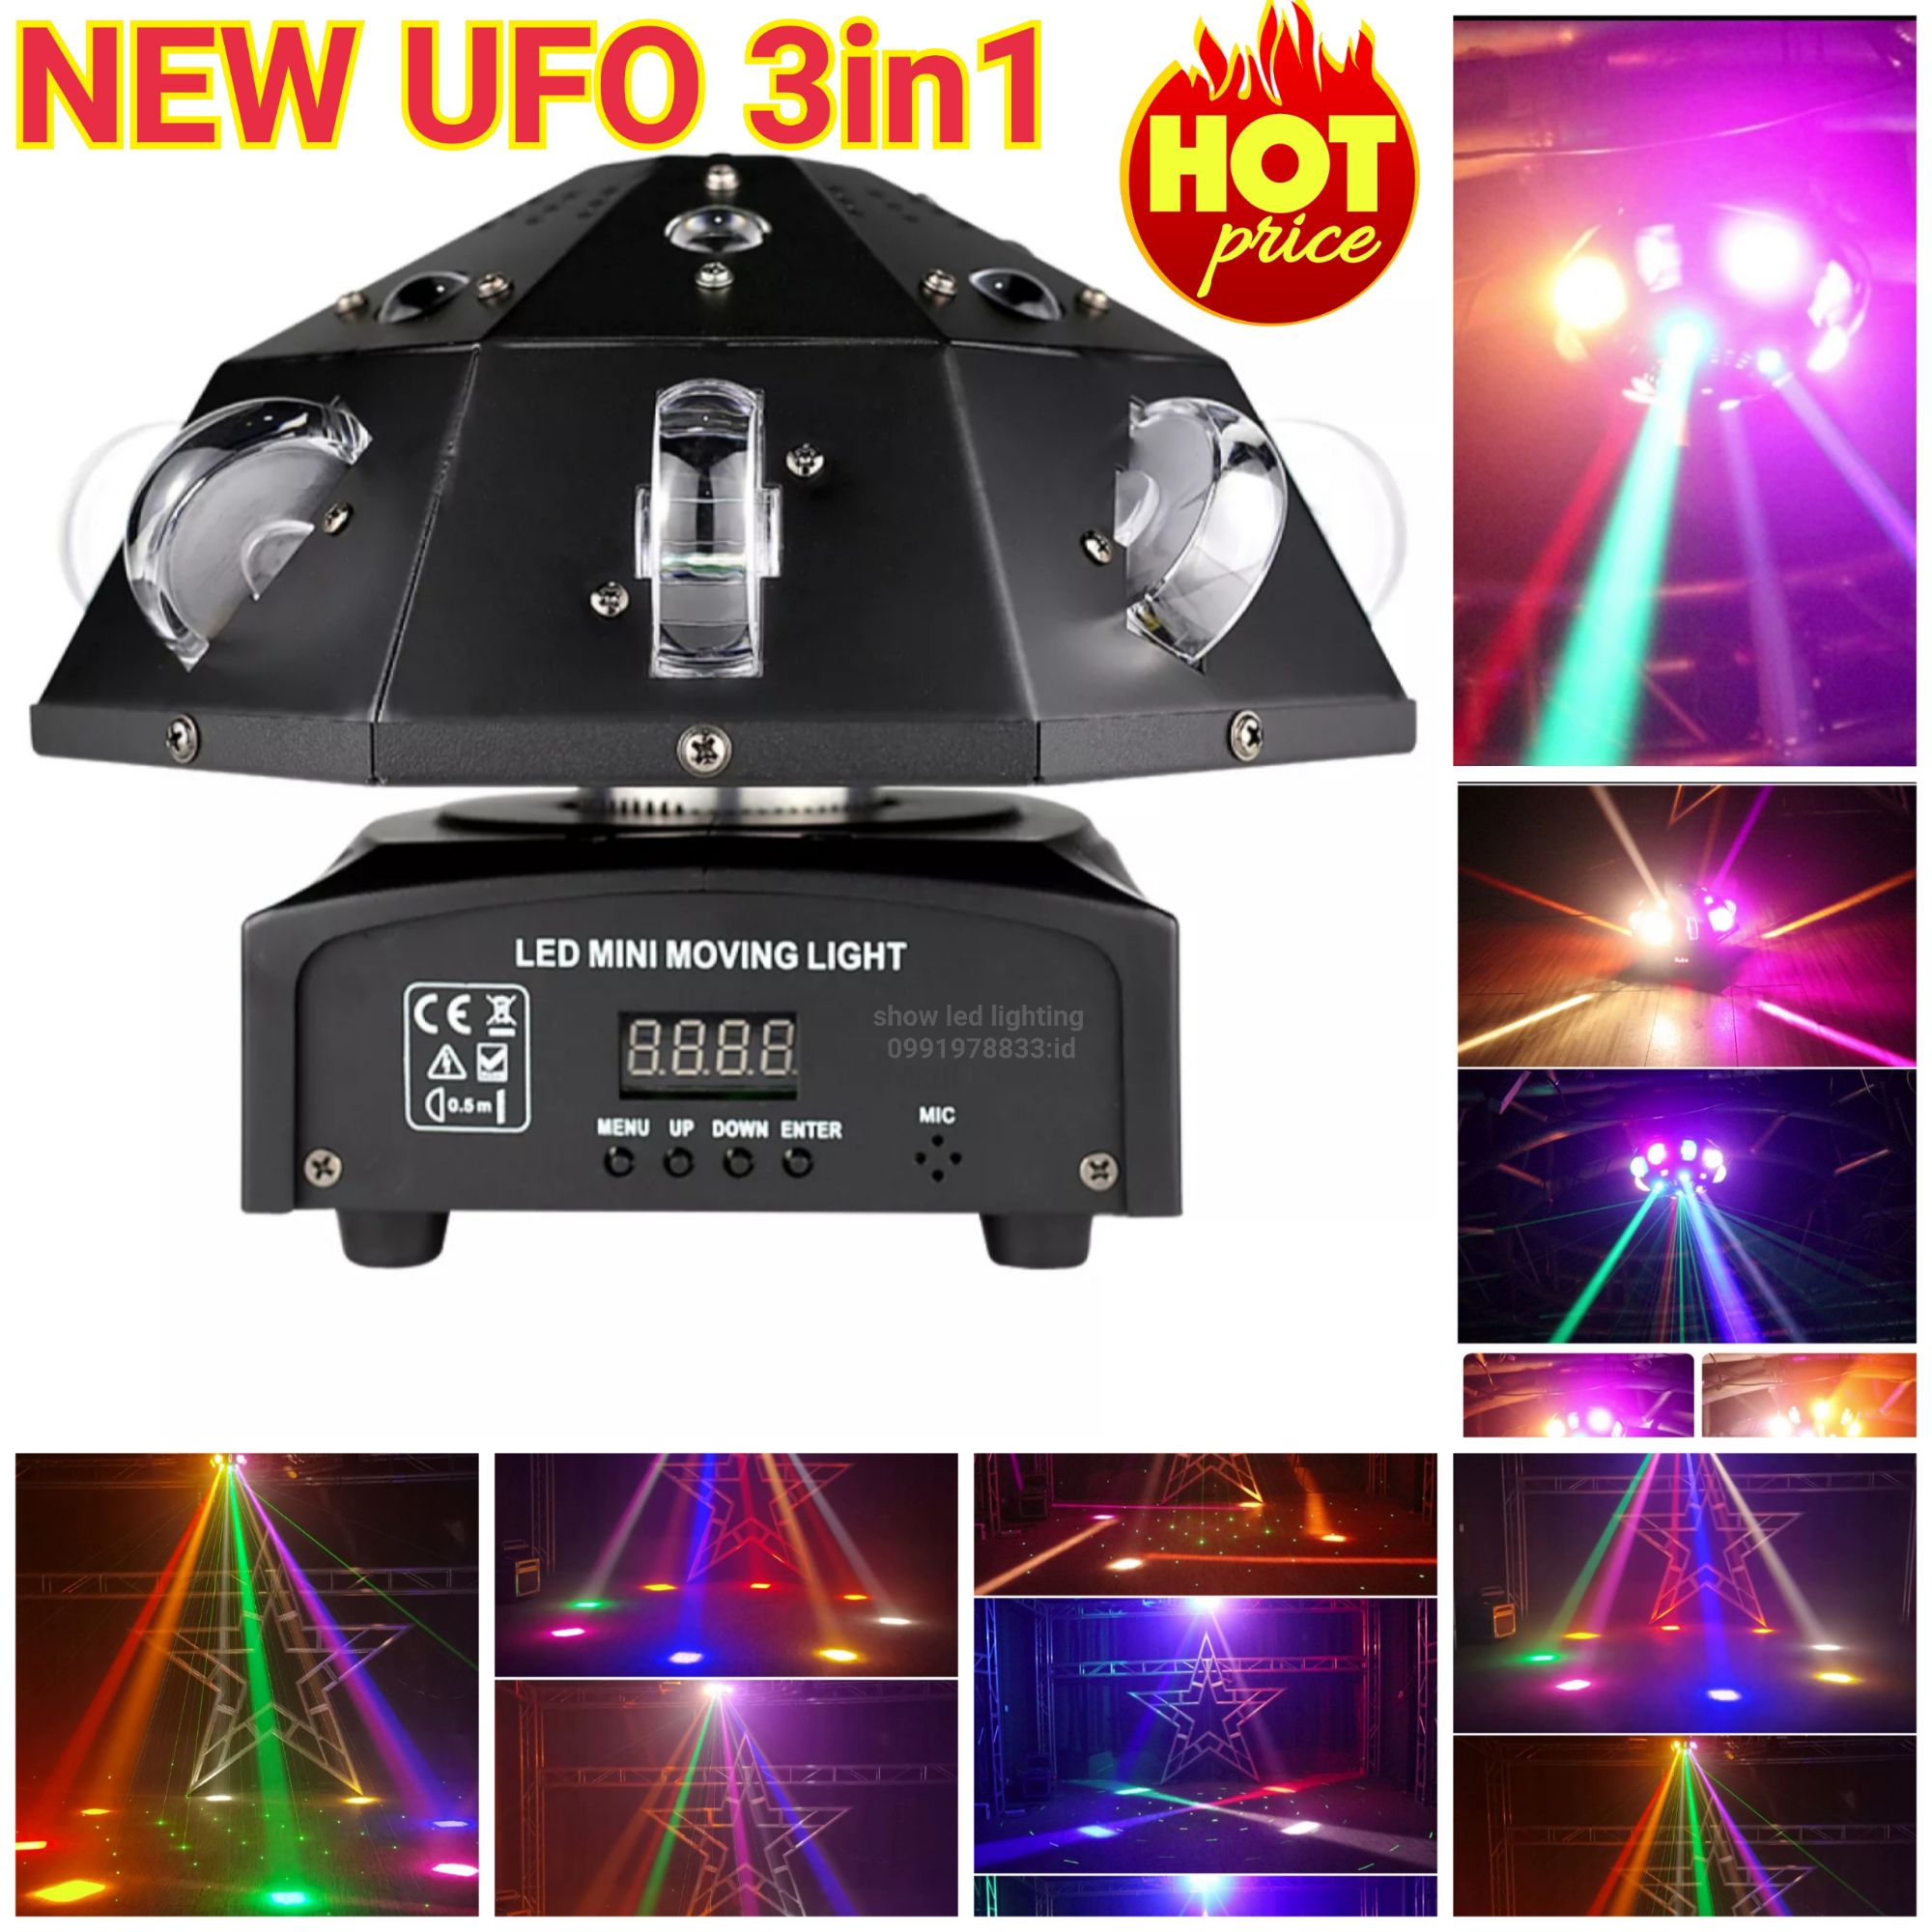 ไฟดิสโก้ NEW UFO 3IN1 dicsco laser light PARTY LIGHT ไฟดิสโก้ ไฟดิสโก้เทค ไฟ Laser light ไฟเทค ปาร์ต